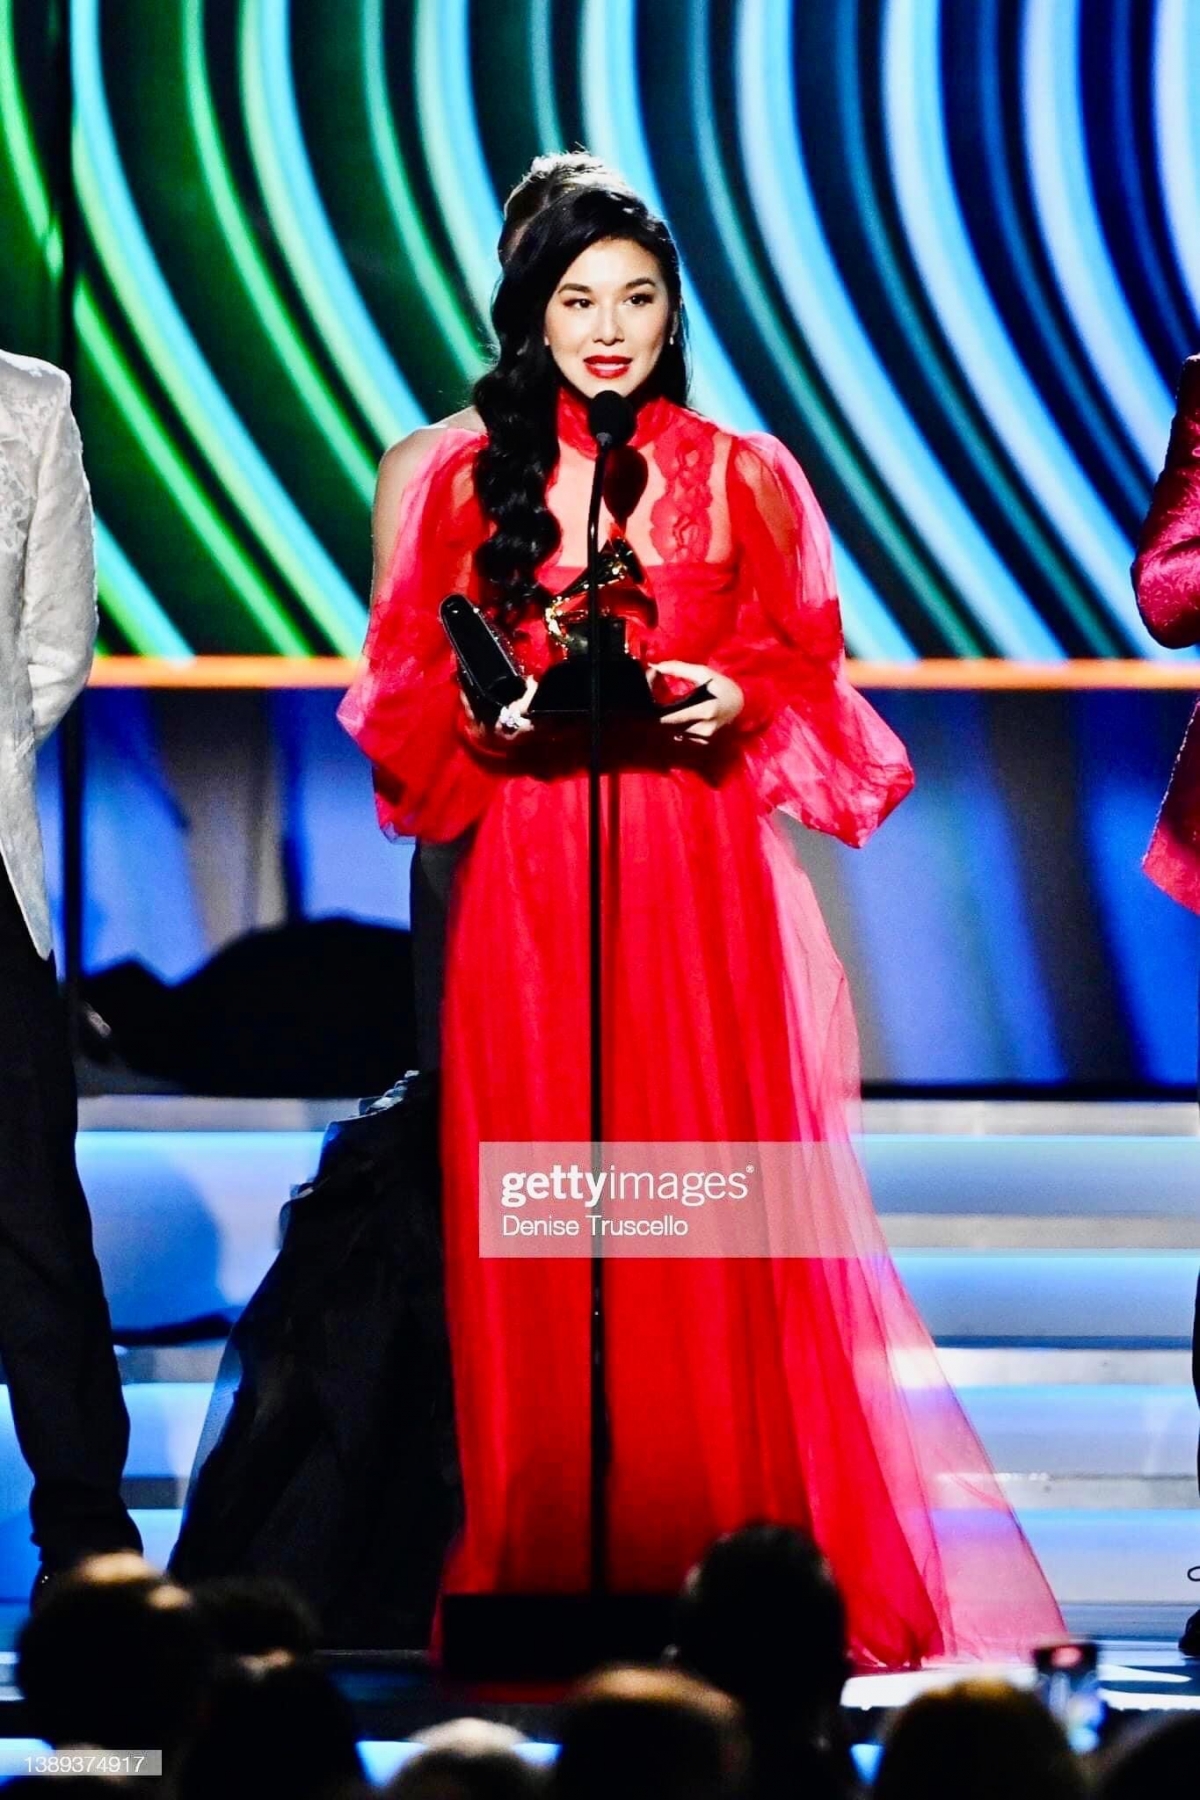 Ca sĩ gốc Việt Sangeeta Kaur giành giải thưởng Grammy 2022 